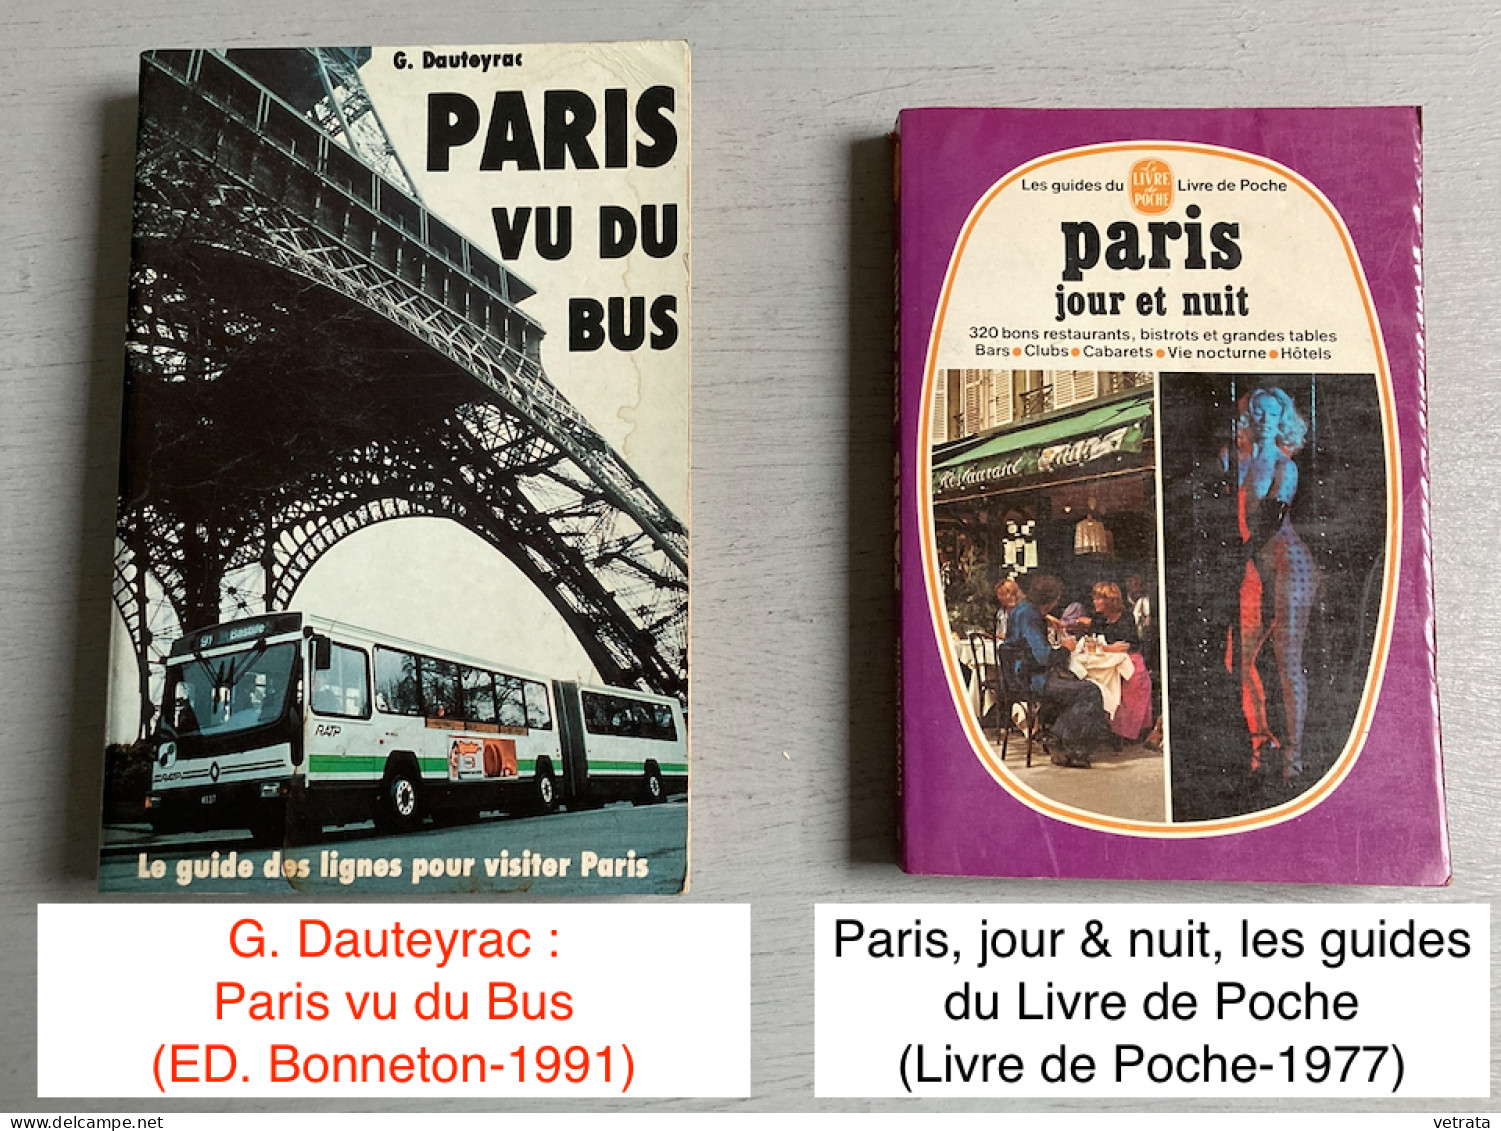 PARIS : 6 Revues (Géo-Autrement-Détours de France-Paris) / 6 encarts Libé Villes / 2 Livres (Paris vu du bus/Paris jour